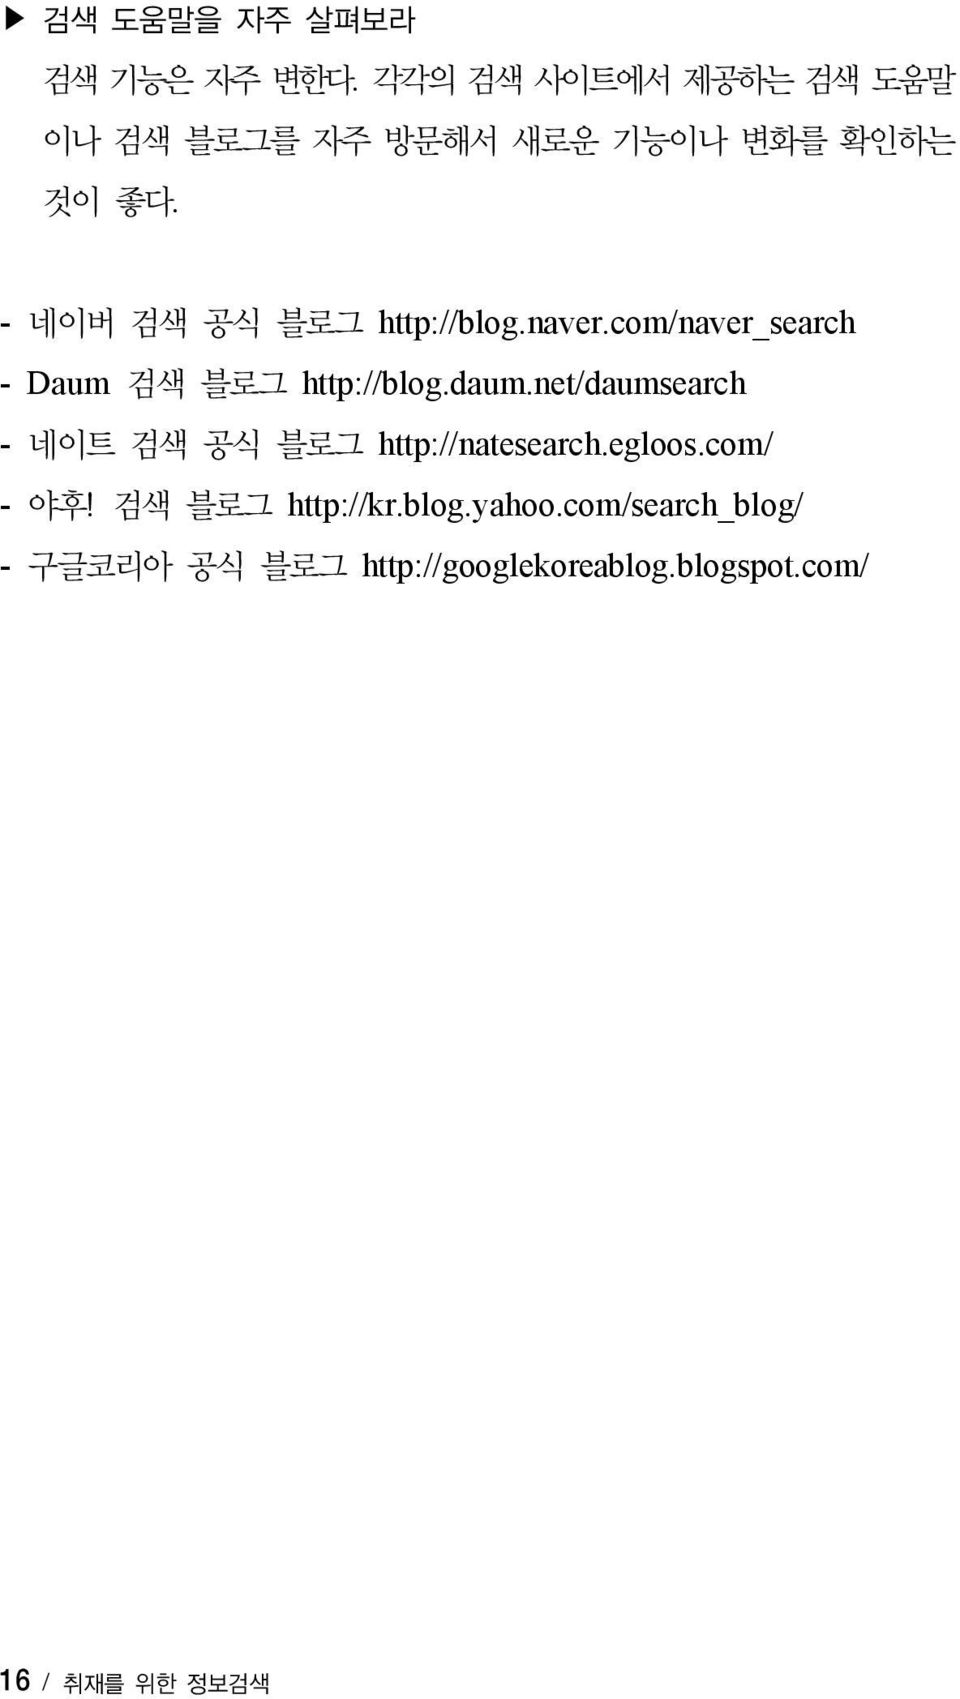 - 네이버 검색 공식 블로그 http://blog.naver.com/naver_search - Daum 검색 블로그 http://blog.daum.